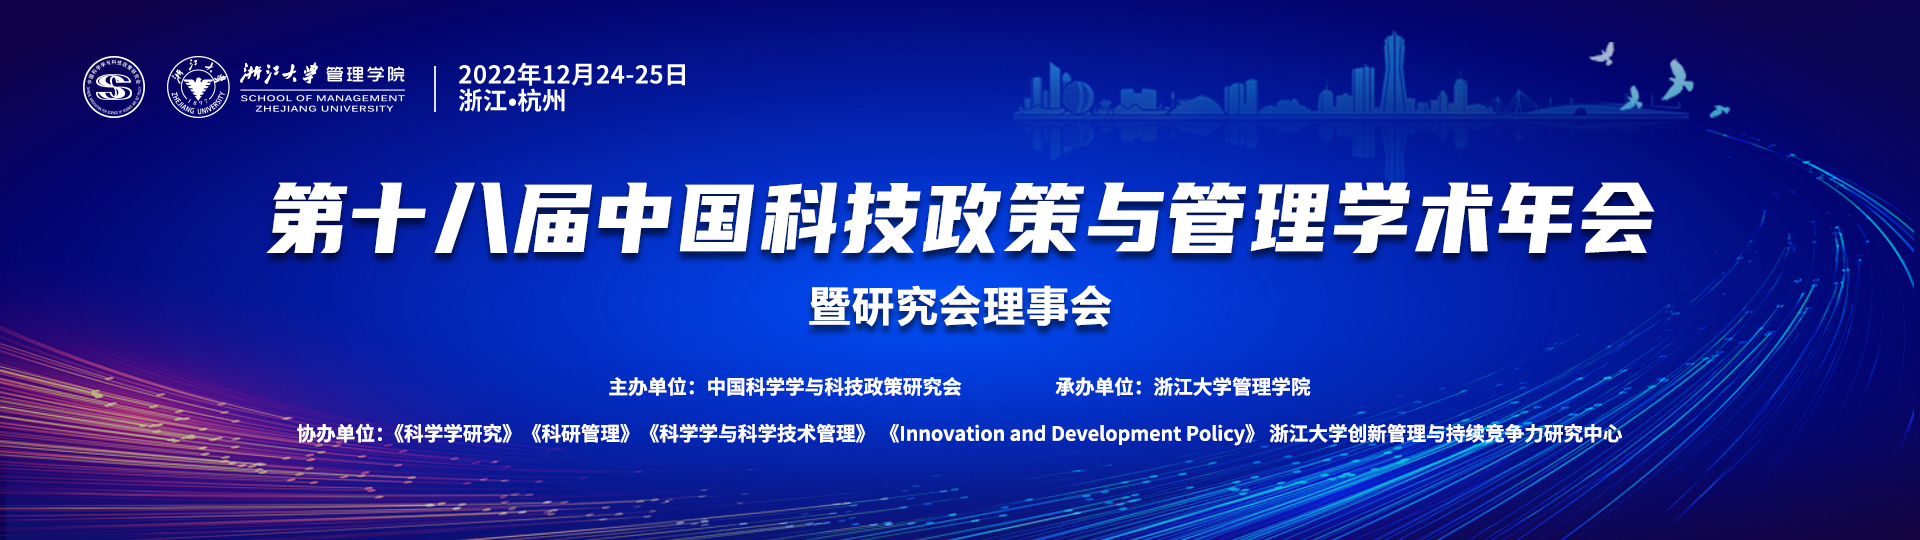 第十八届中国科技政策与管理学术年会暨研究会理事会